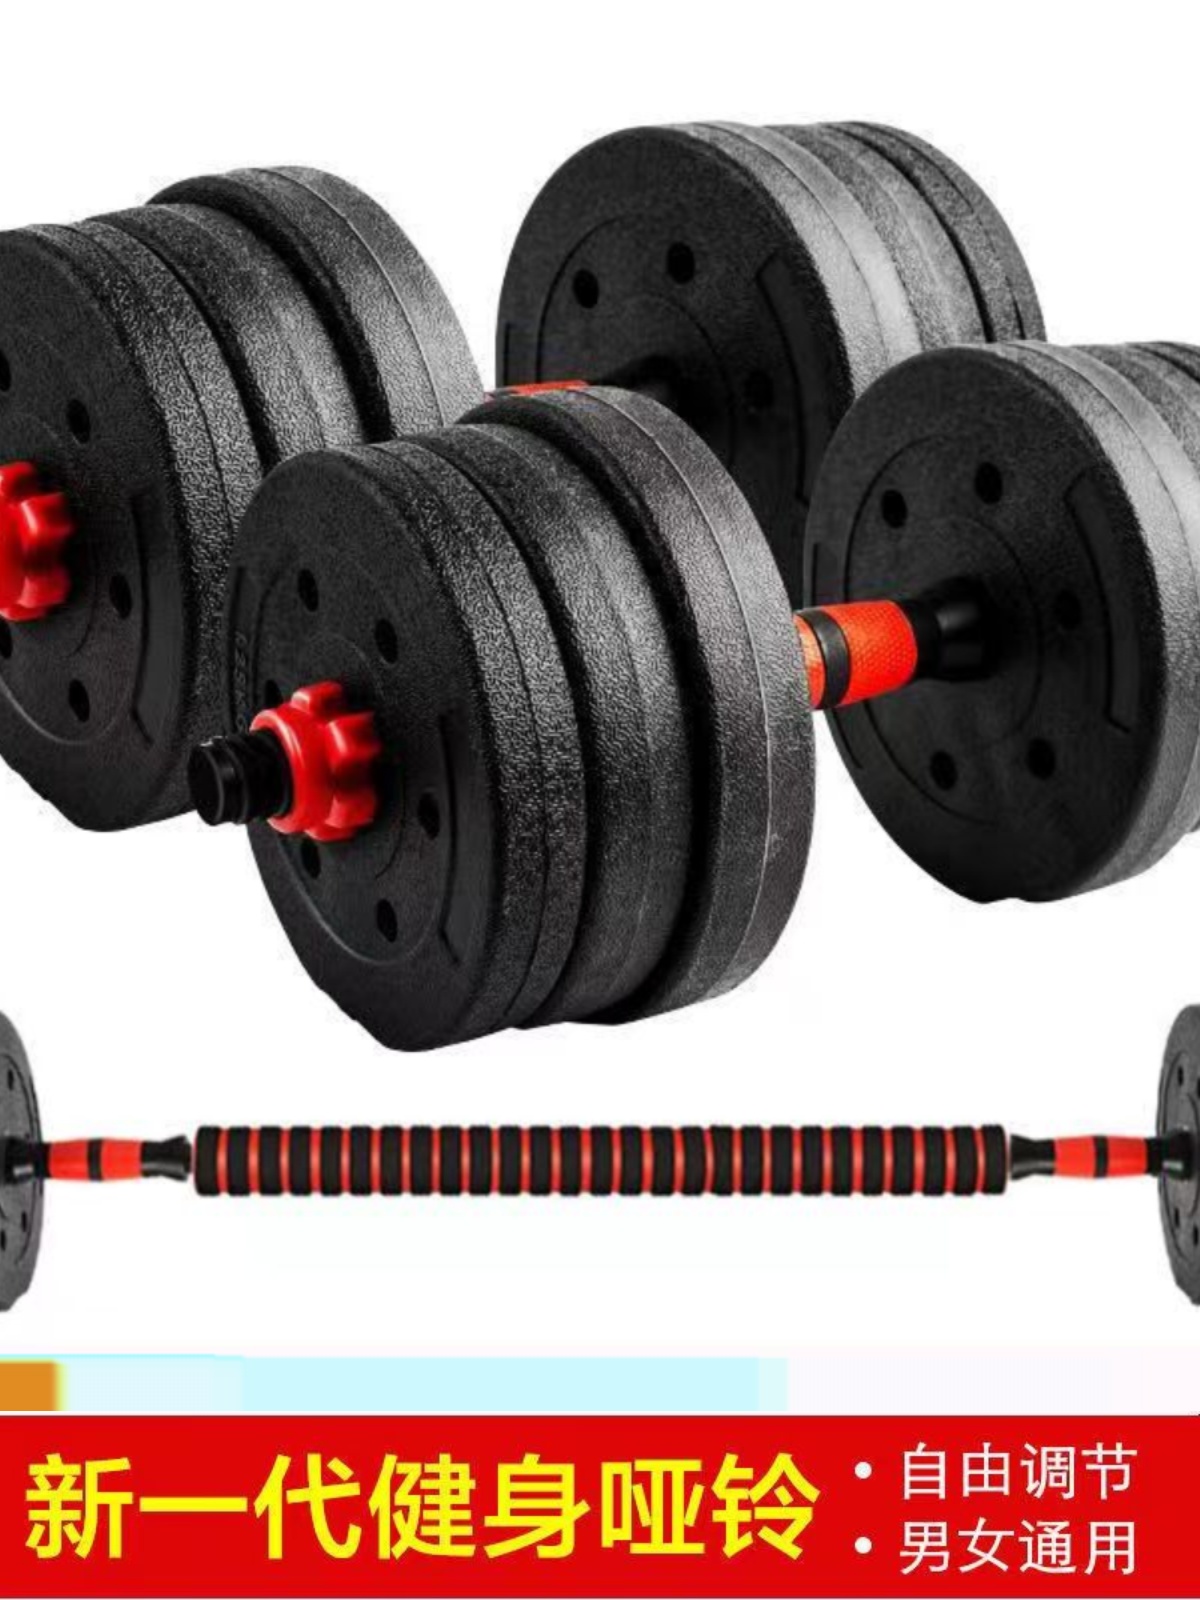 包胶哑铃男士健身家用器材锻炼可调节学生女杠铃组合套装10公斤